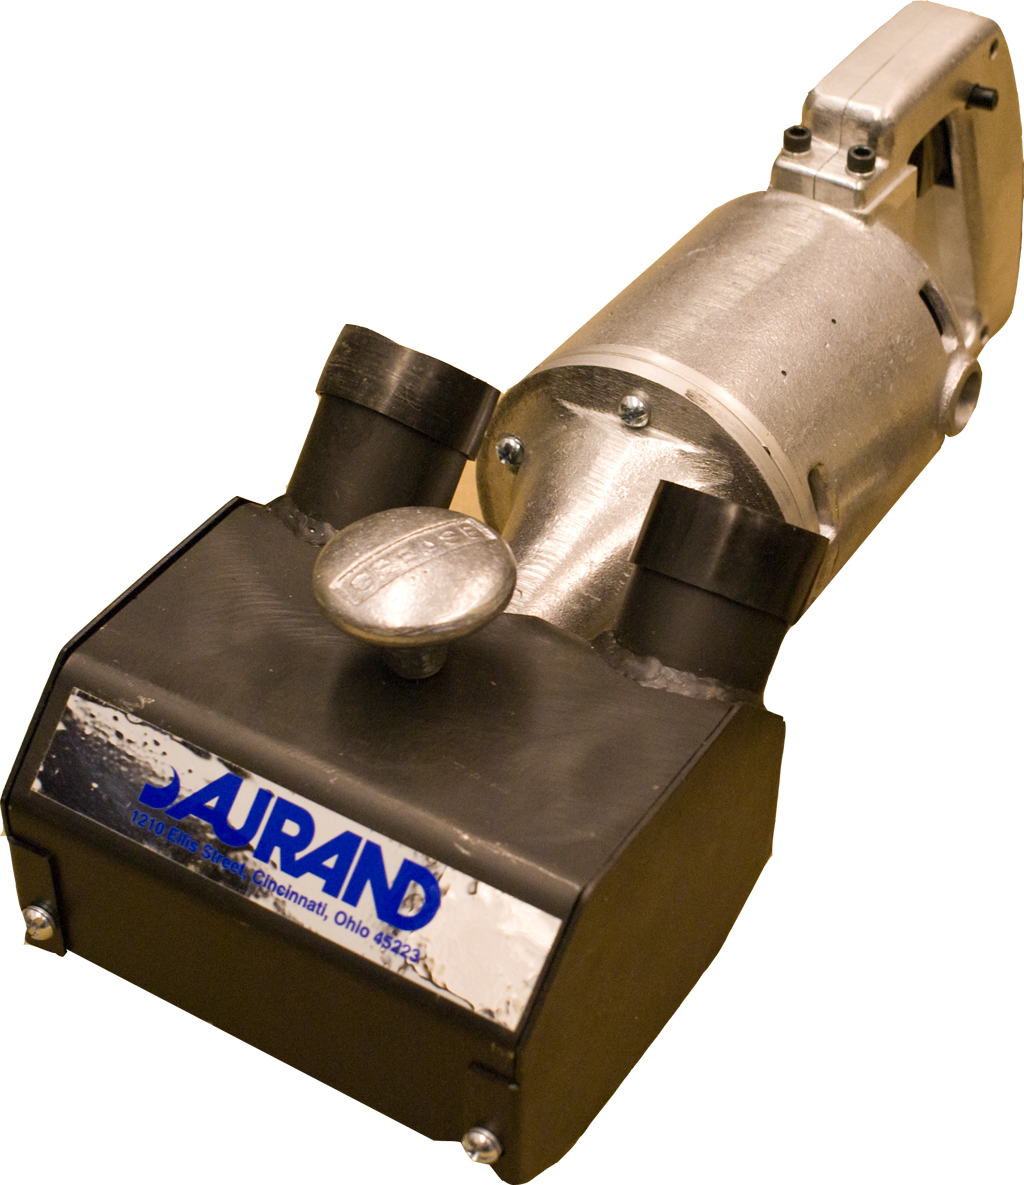 Aurand 5" vacuum shroud dust collector